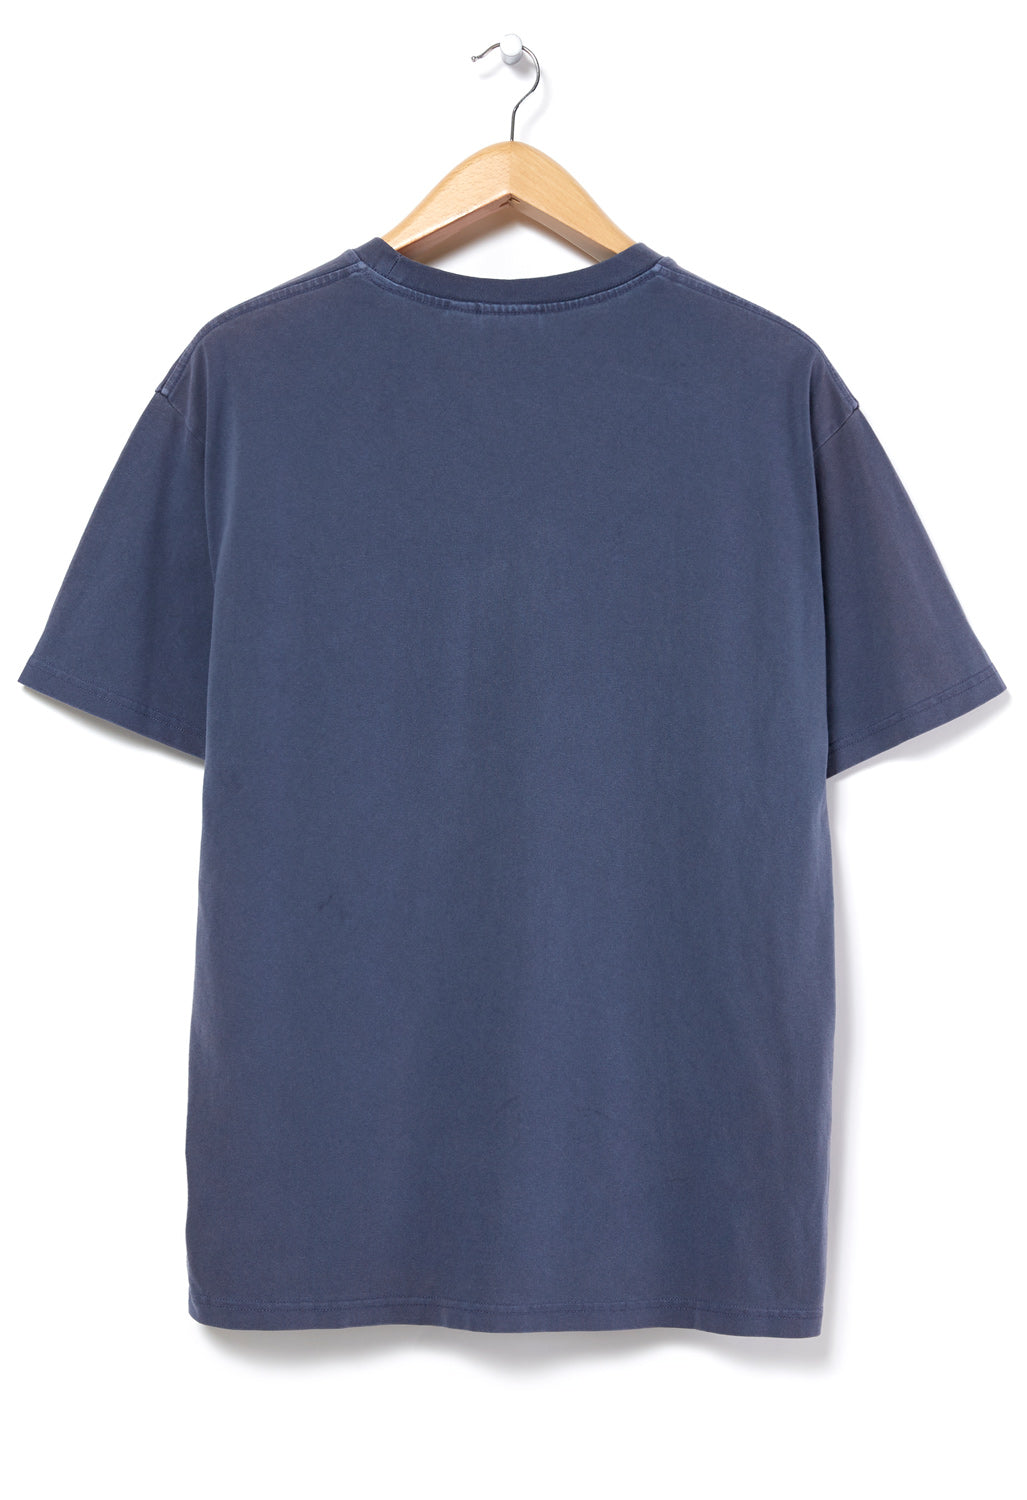 Gramicci Gramicci Hiker T-Shirt - Navy Pigment